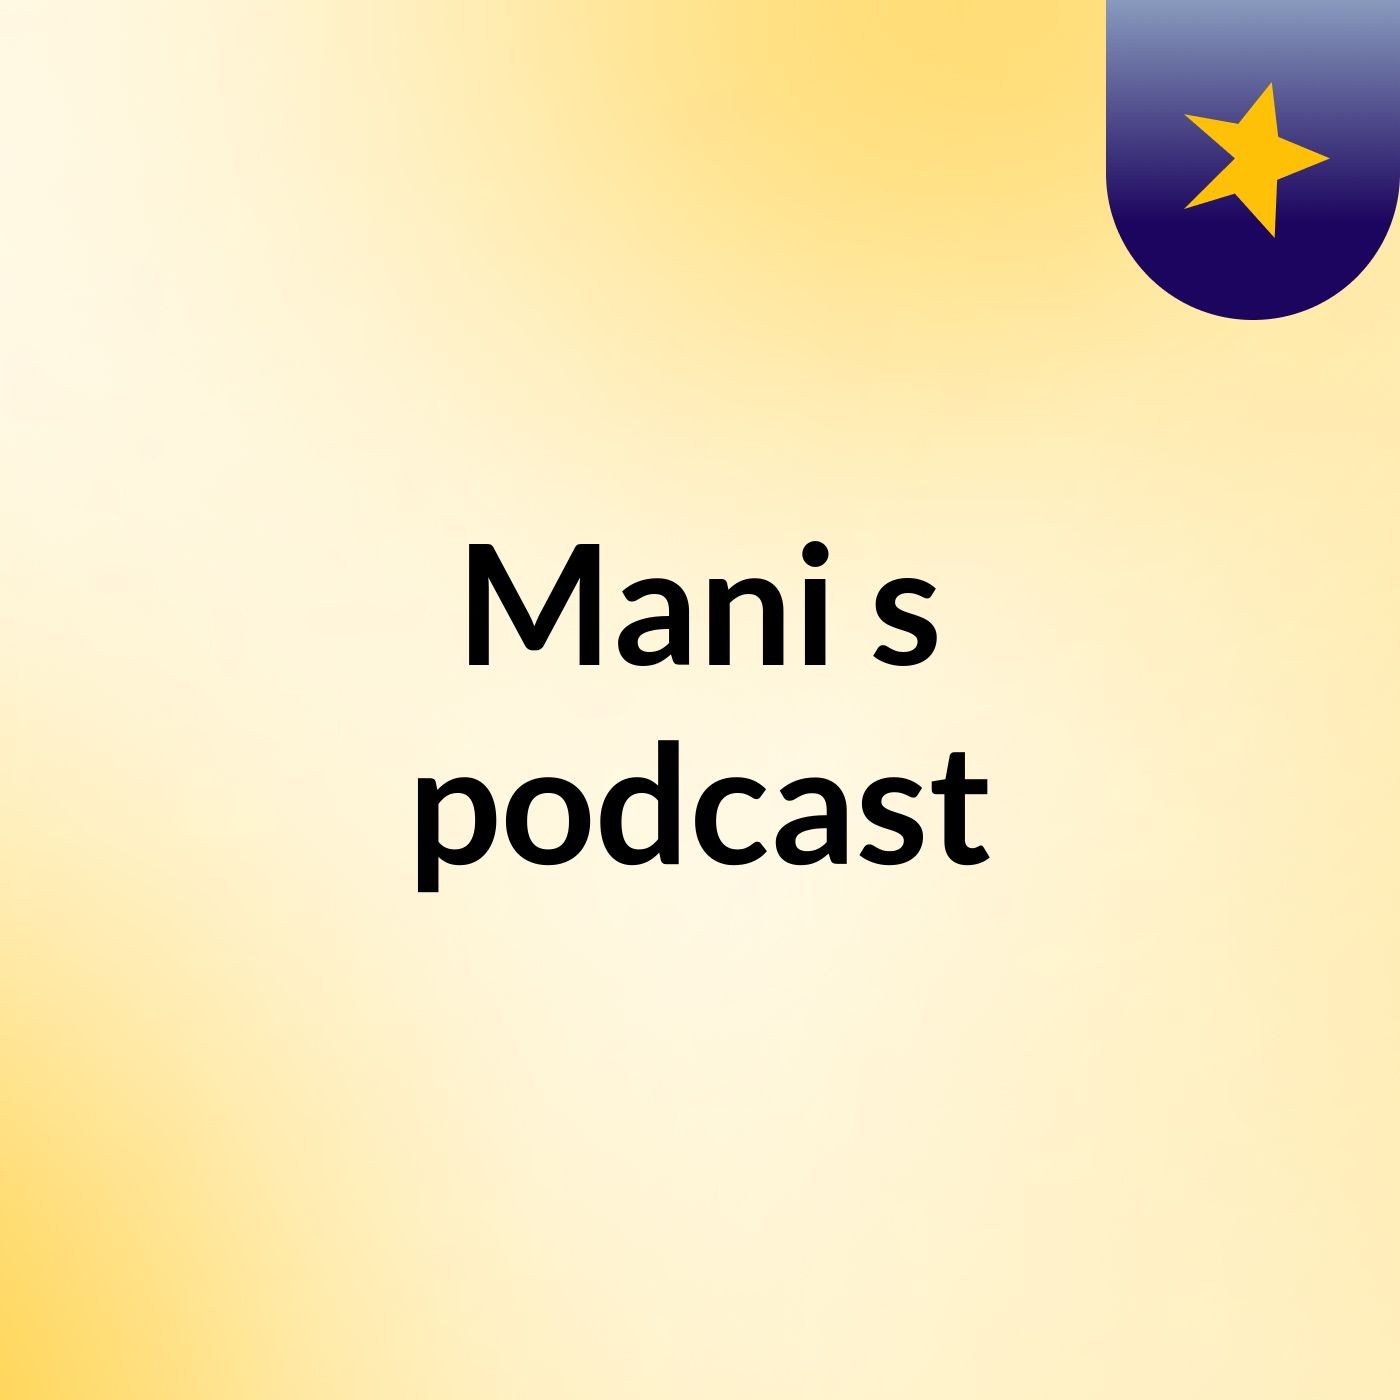 Mani's podcast